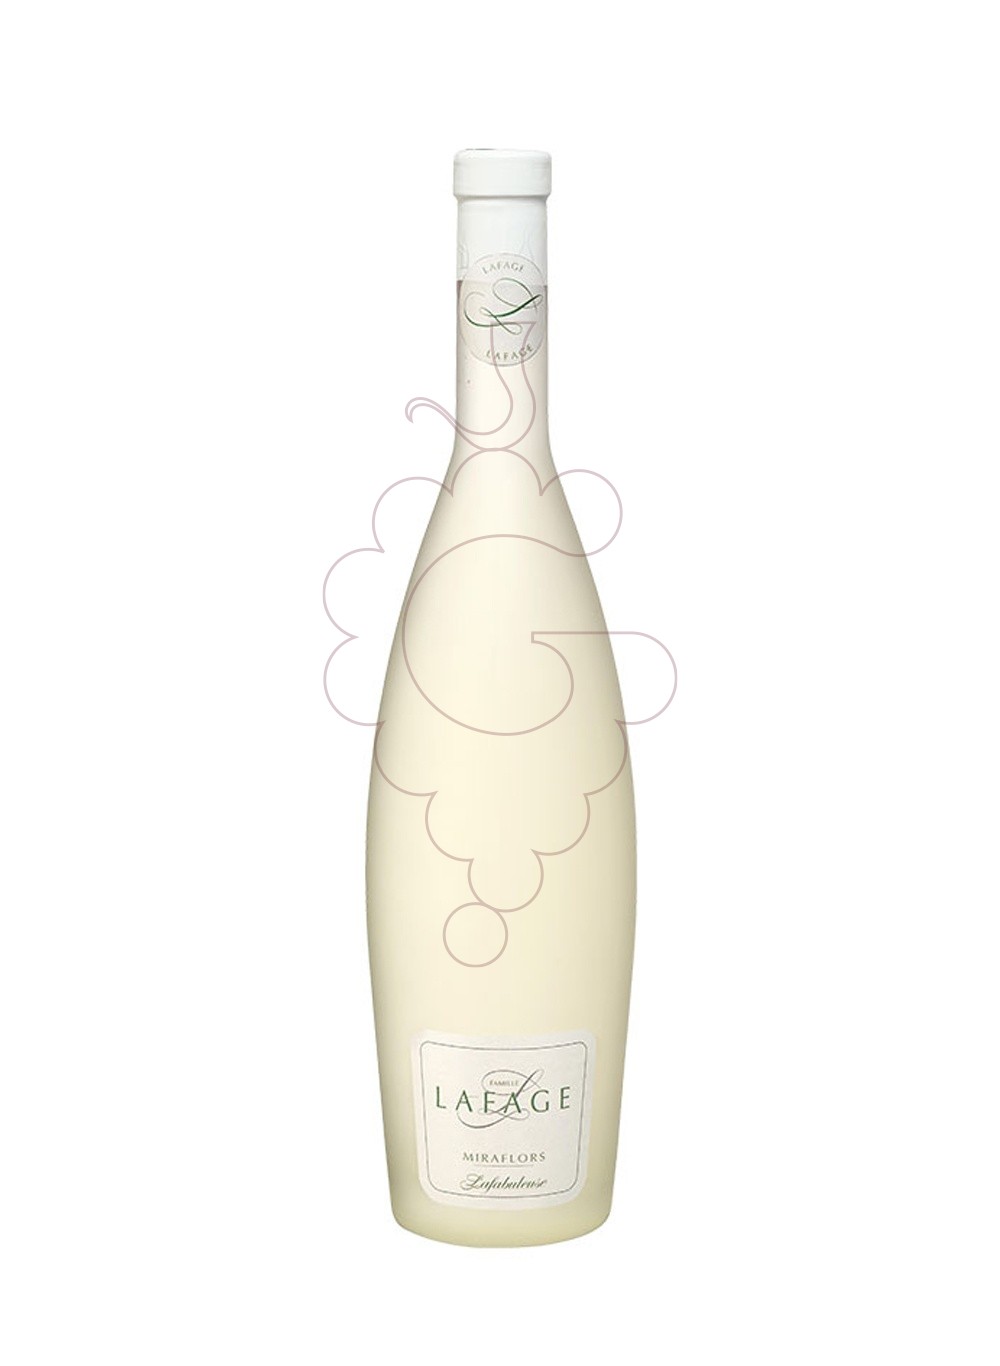 Foto Lafage Miraflors Lafabuleuse Blanco vino blanco